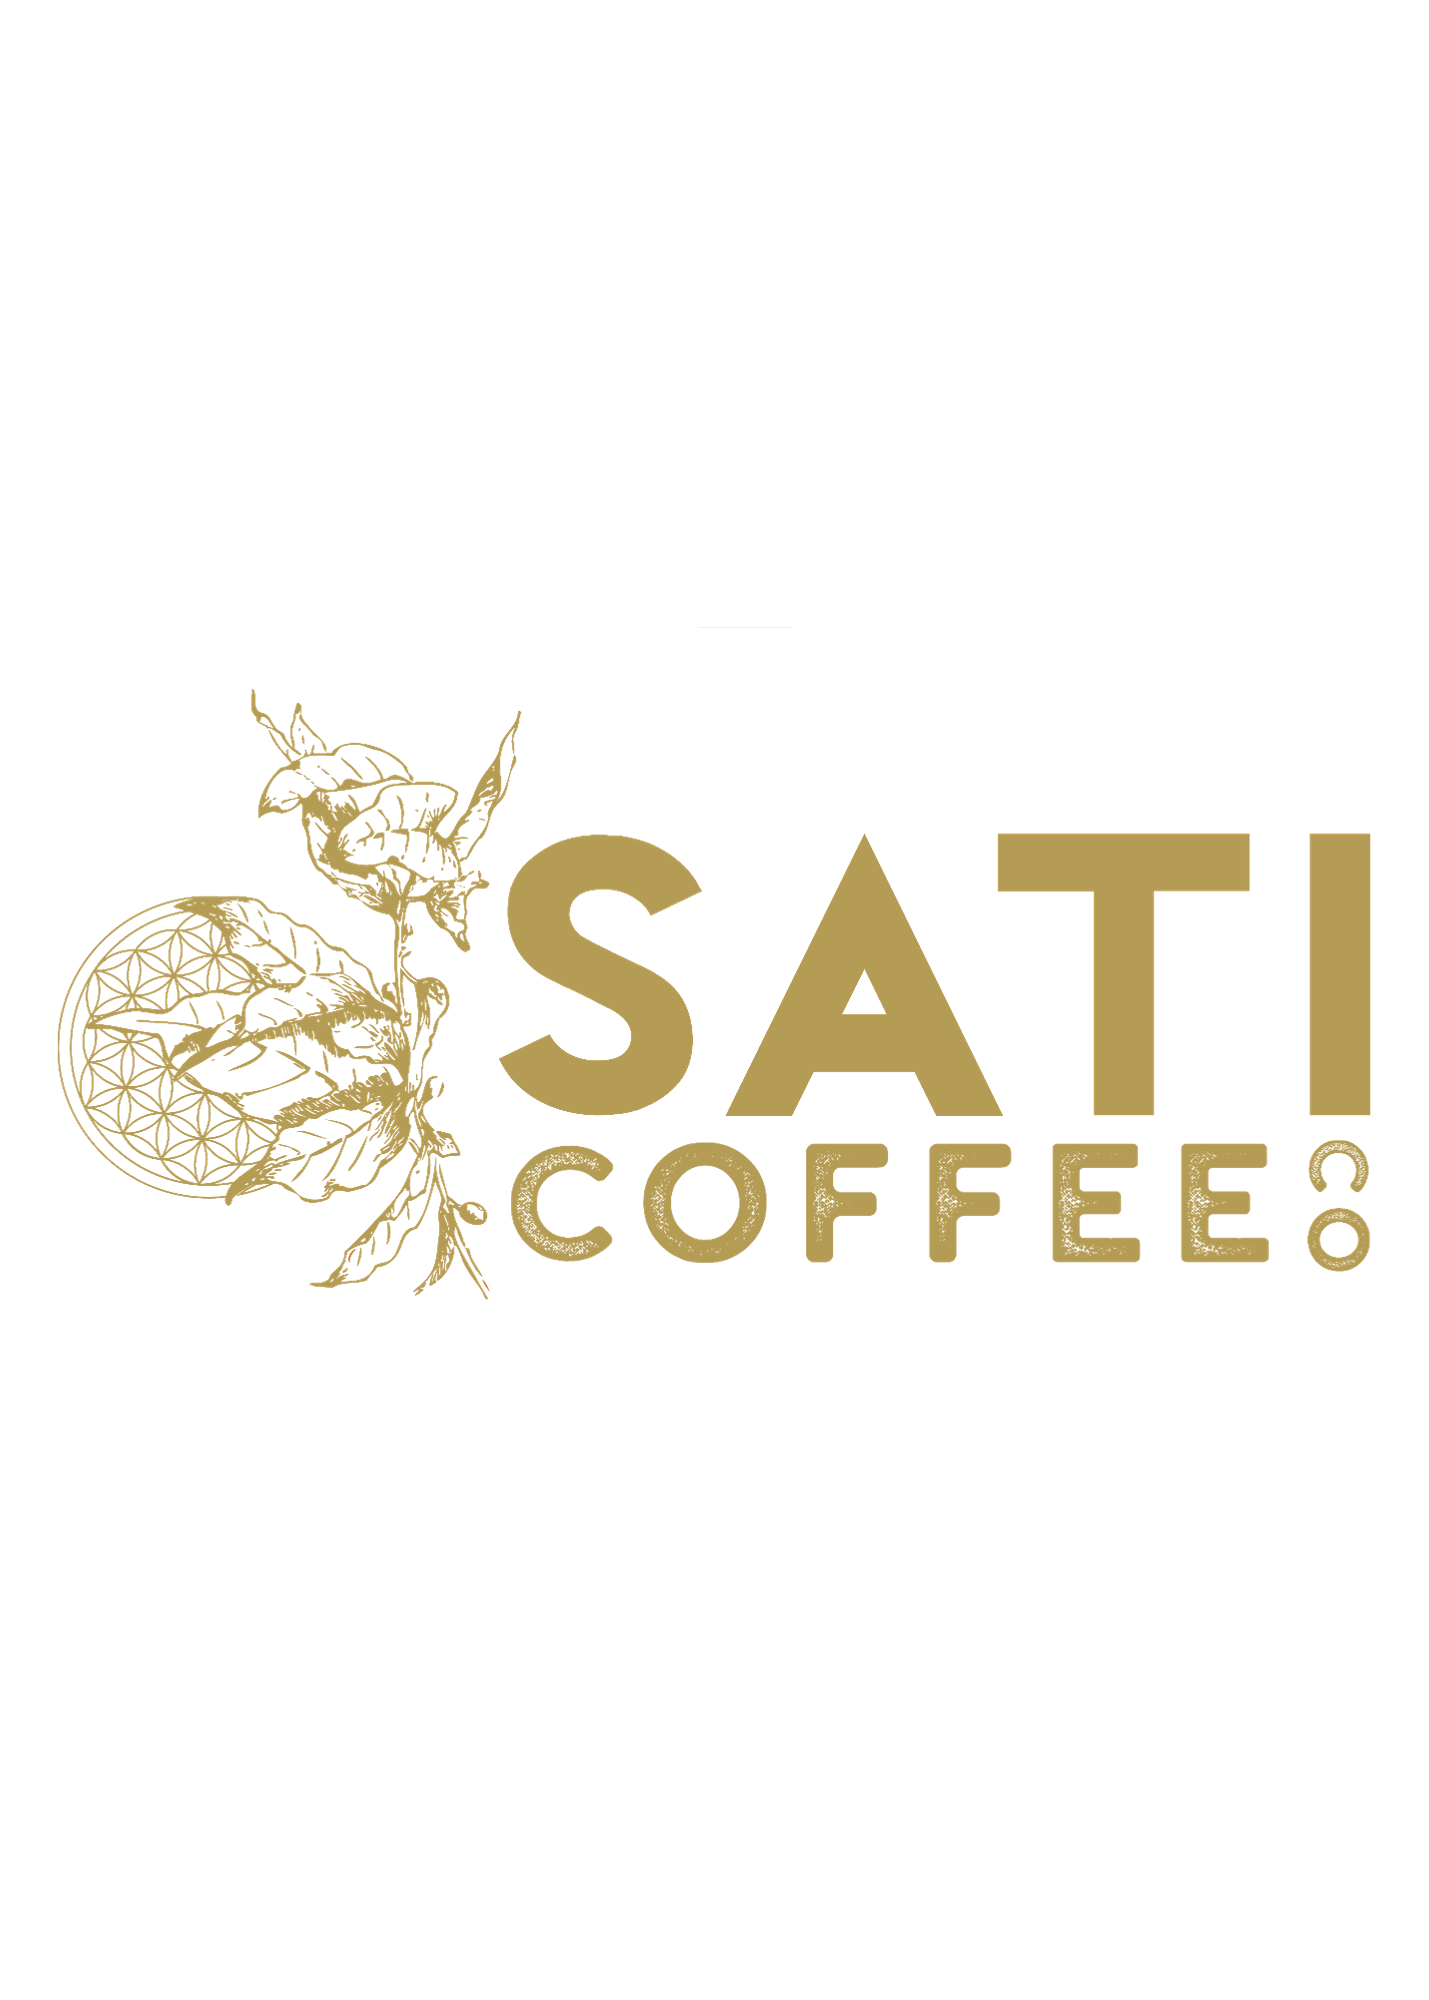 Sati Coffee Co